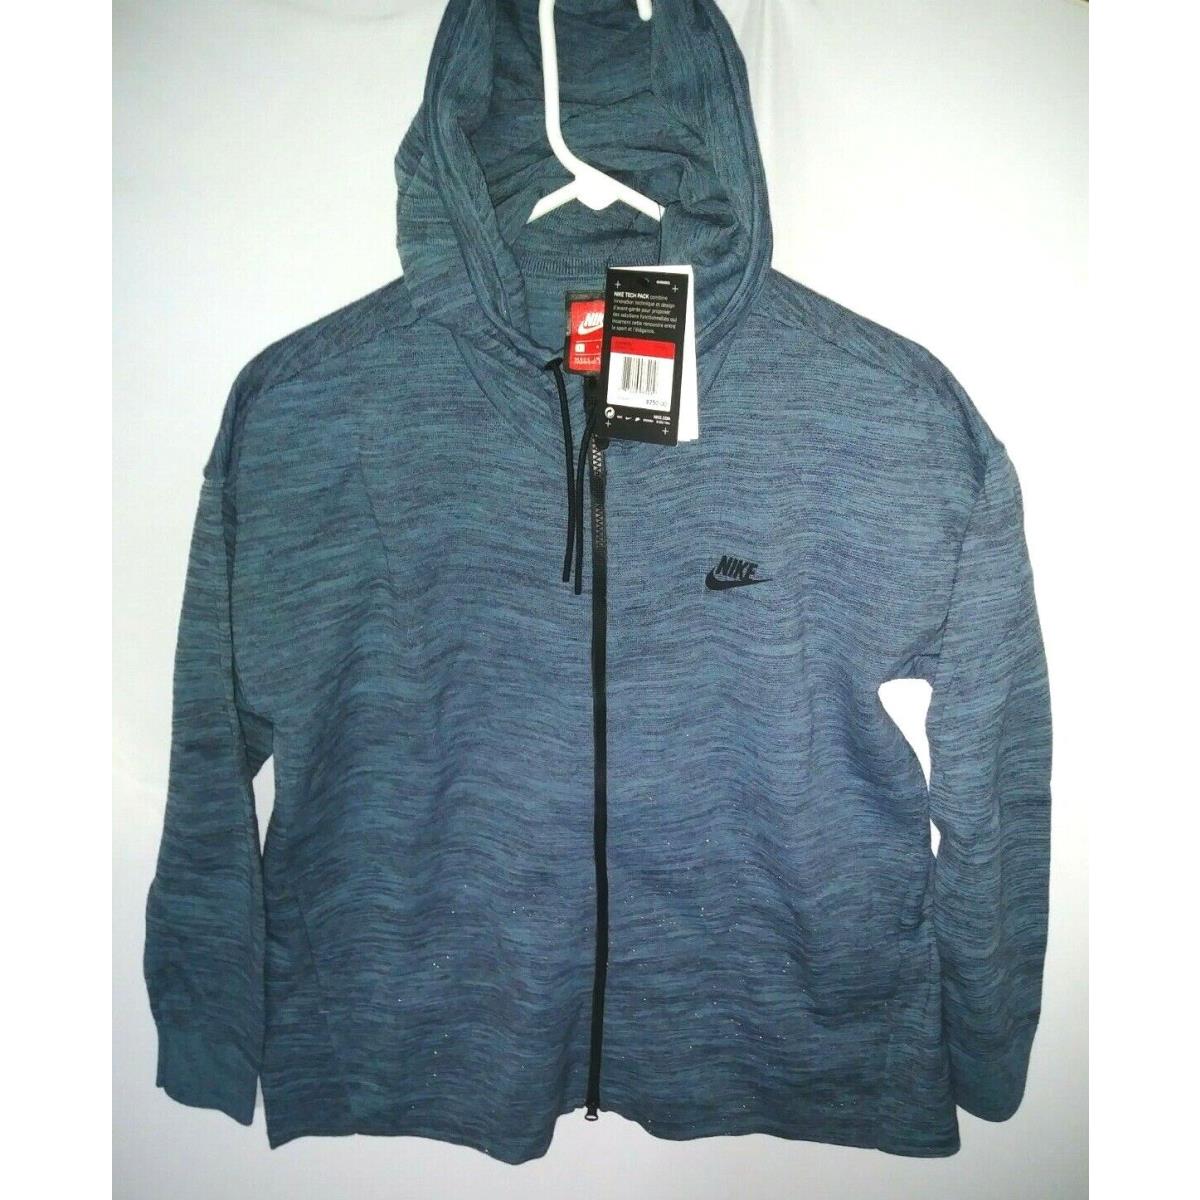 Nike Women`s Sportswear Tech Knit Jacket Blue/gray 835641 464 Size Large